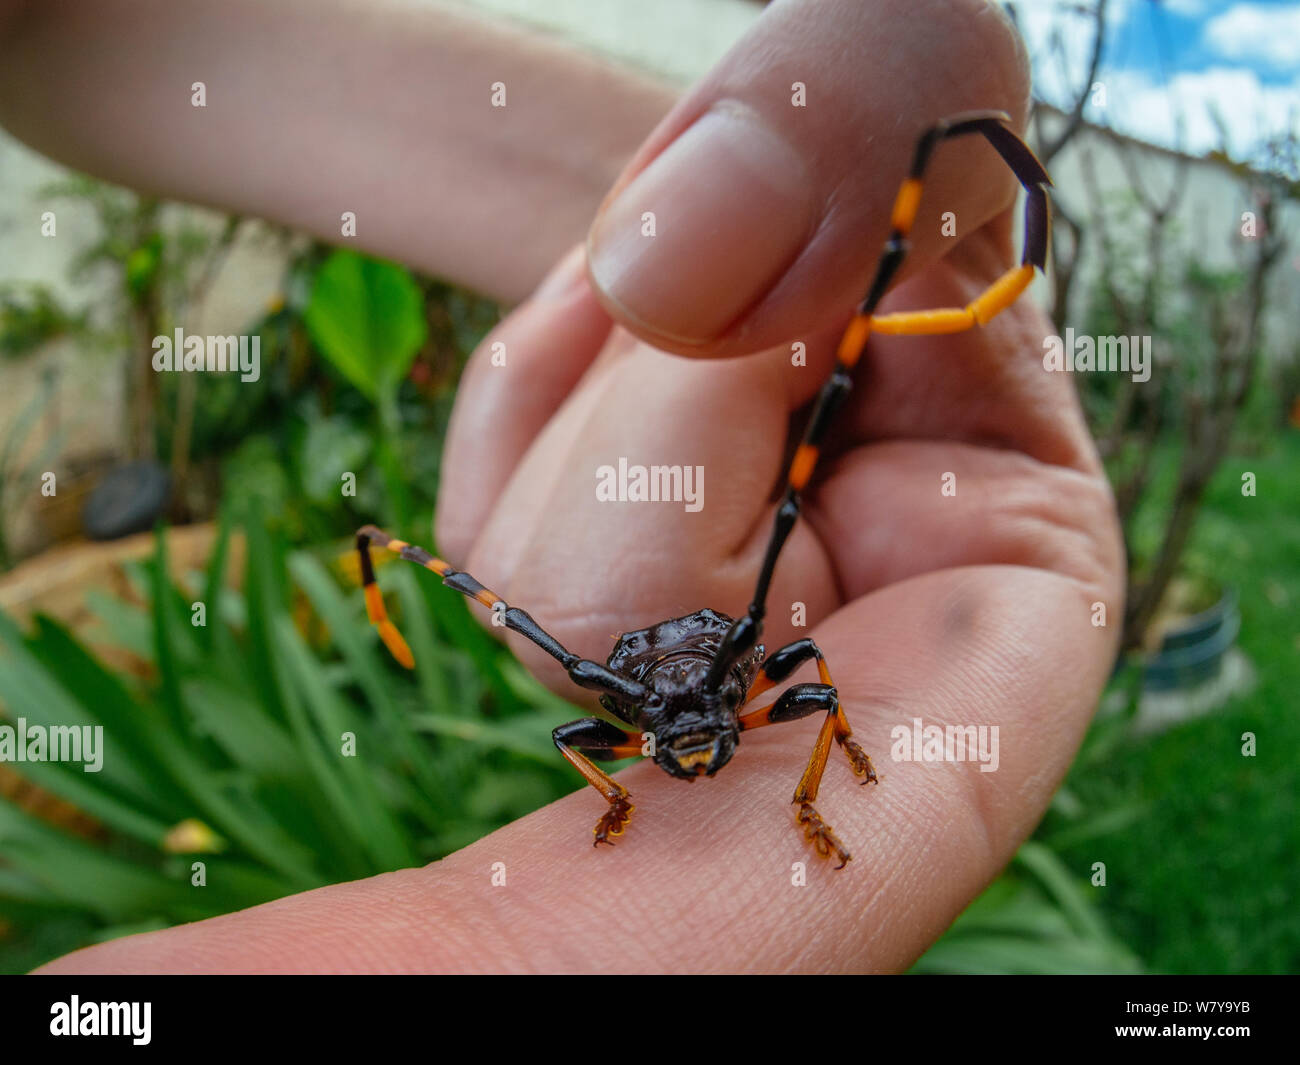 Avec longicorne grande antenne sur une main humaine, d'insectes trouvés dans un jardin Banque D'Images